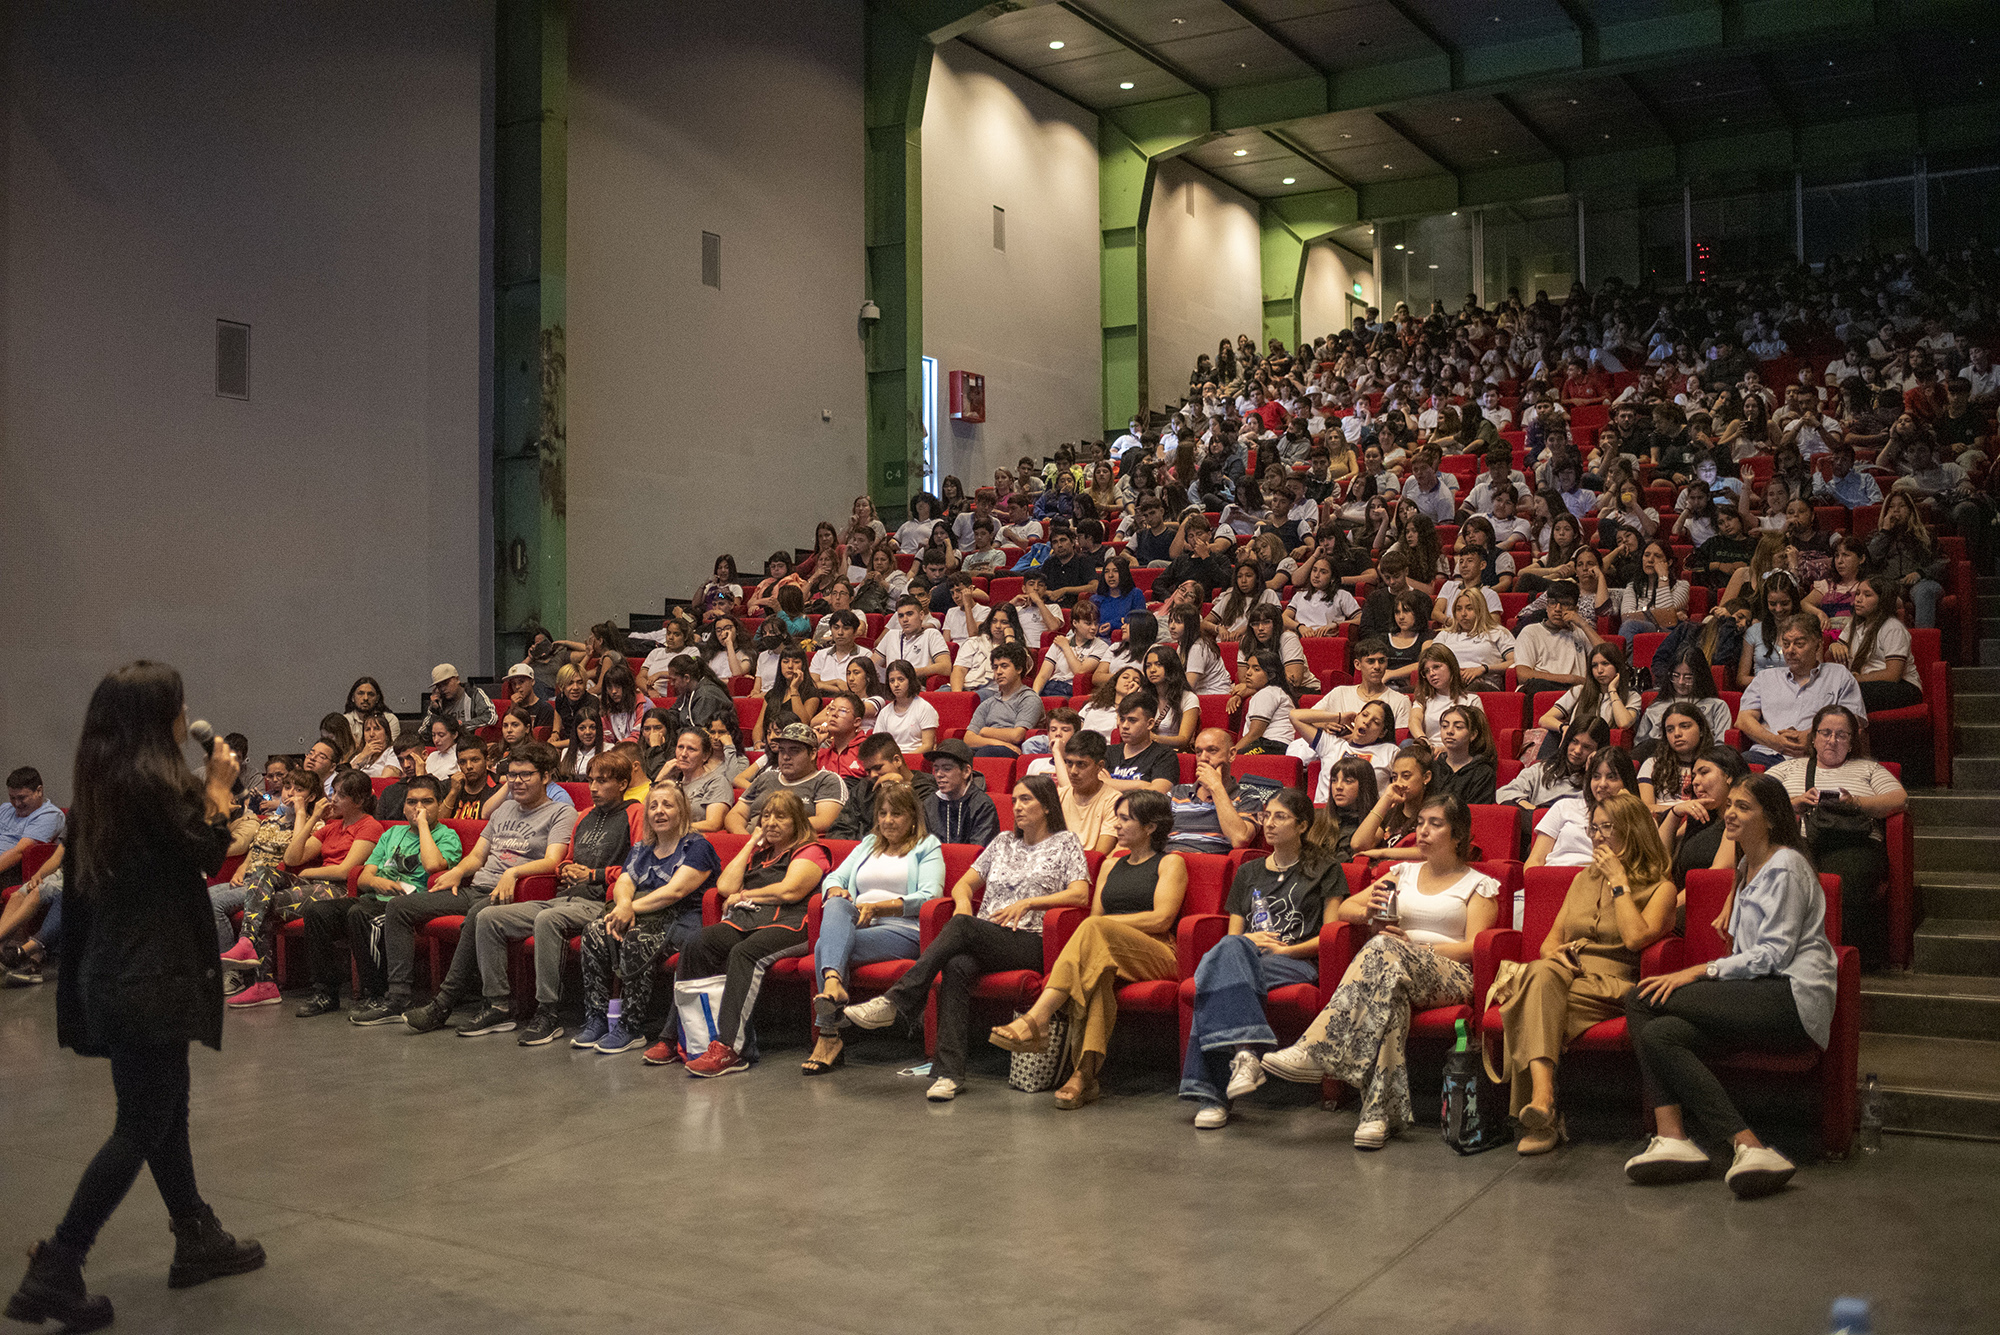 Más de 500 alumnos de 3º año de escuelas públicas y privadas colmaron el auditorio de Tenaris